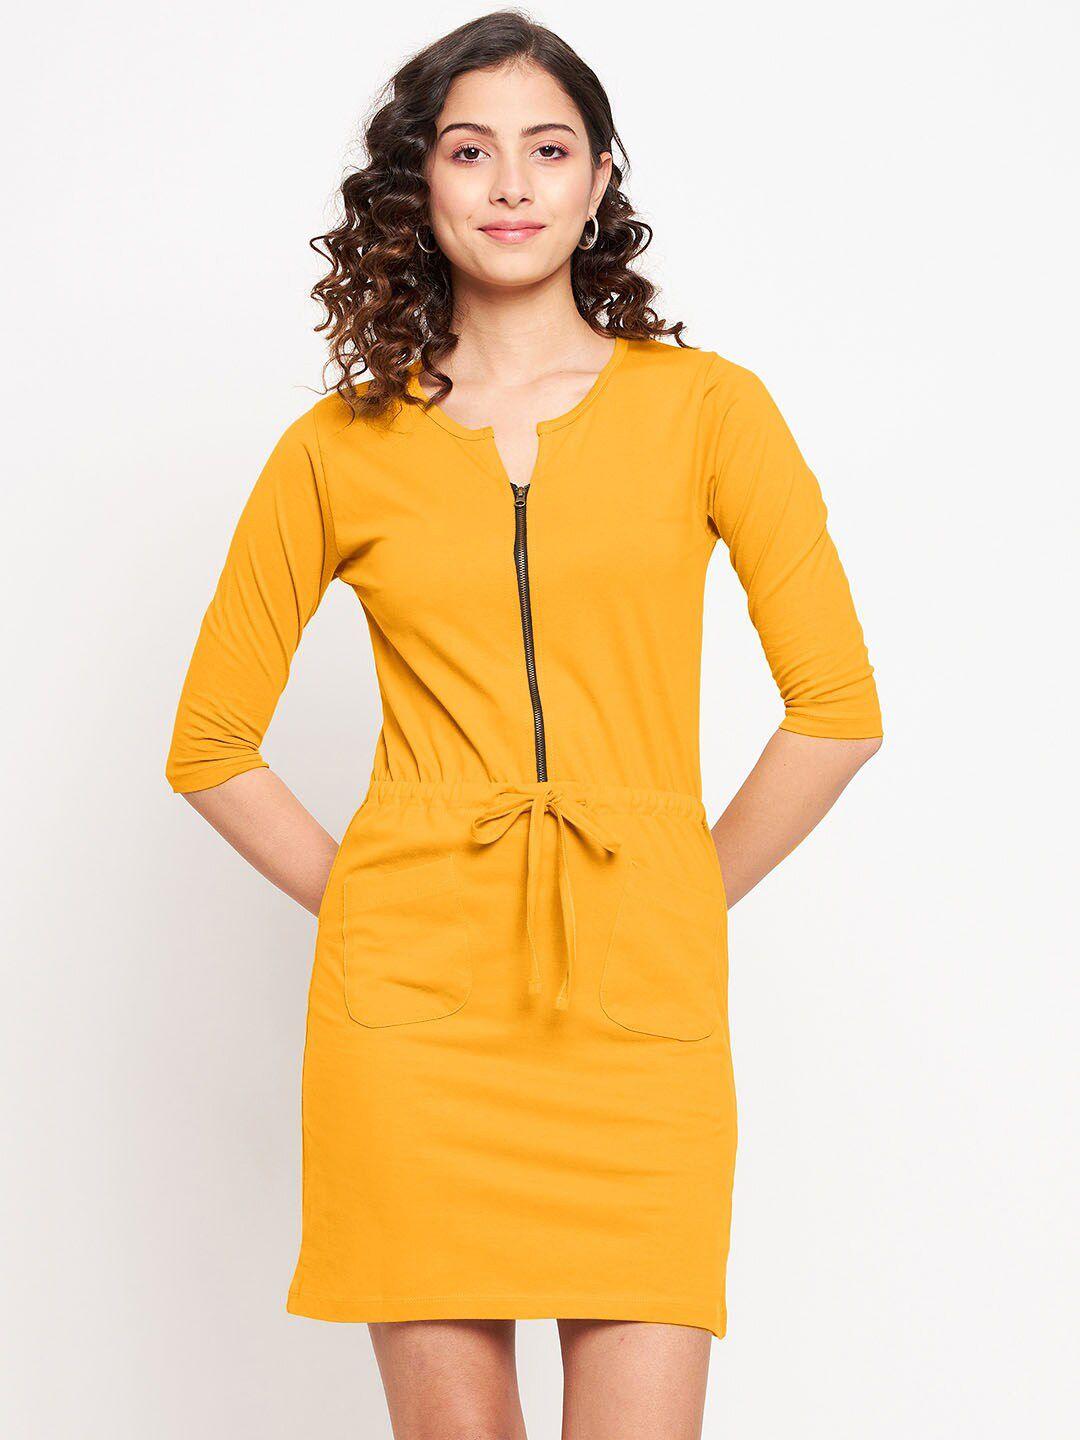 jhankhi women mustard yellow sheath dress